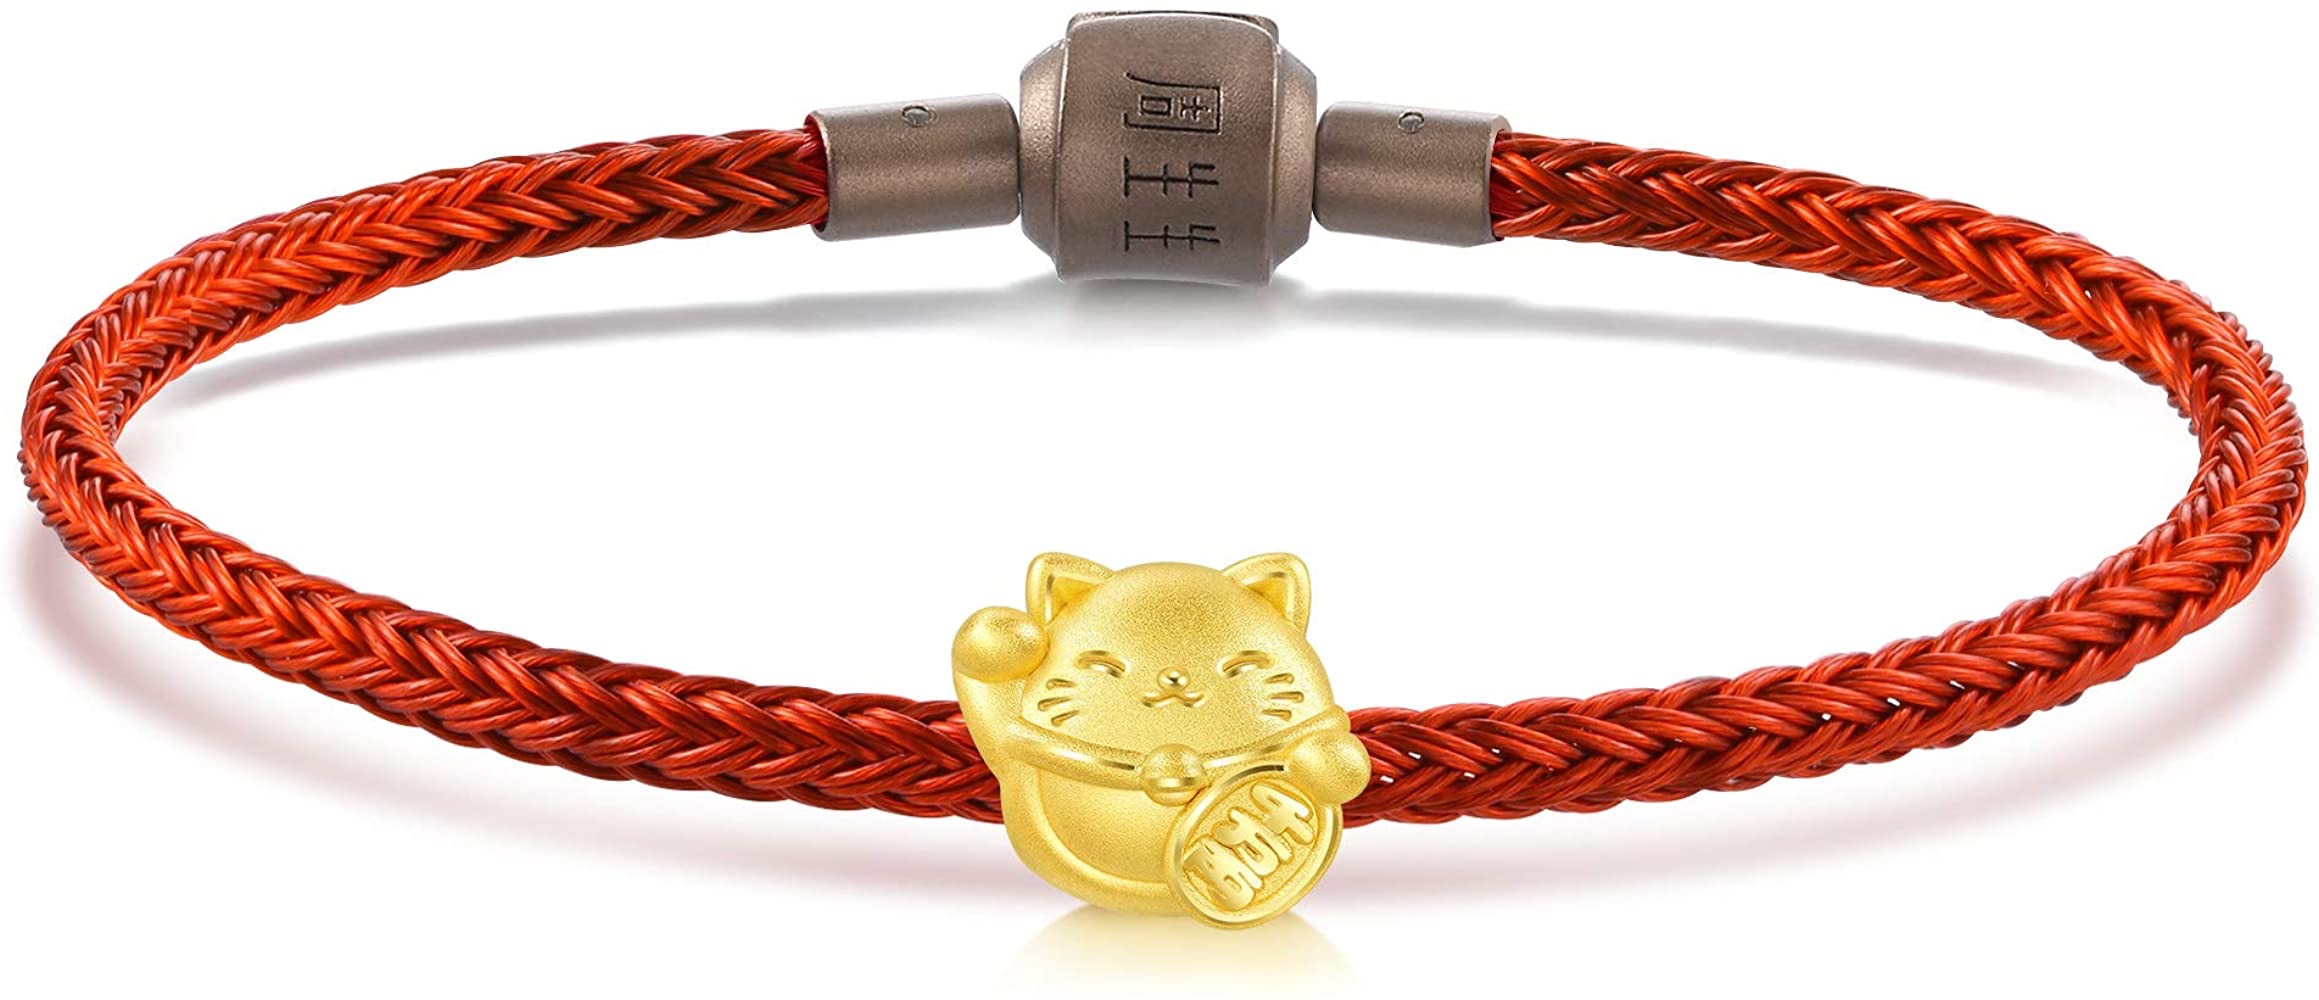 周生生黄金串珠手链促销Chow Sang Sang 999 24K Solid Gold Maneki Neko Lucky Cat Mini Charm Bracelet